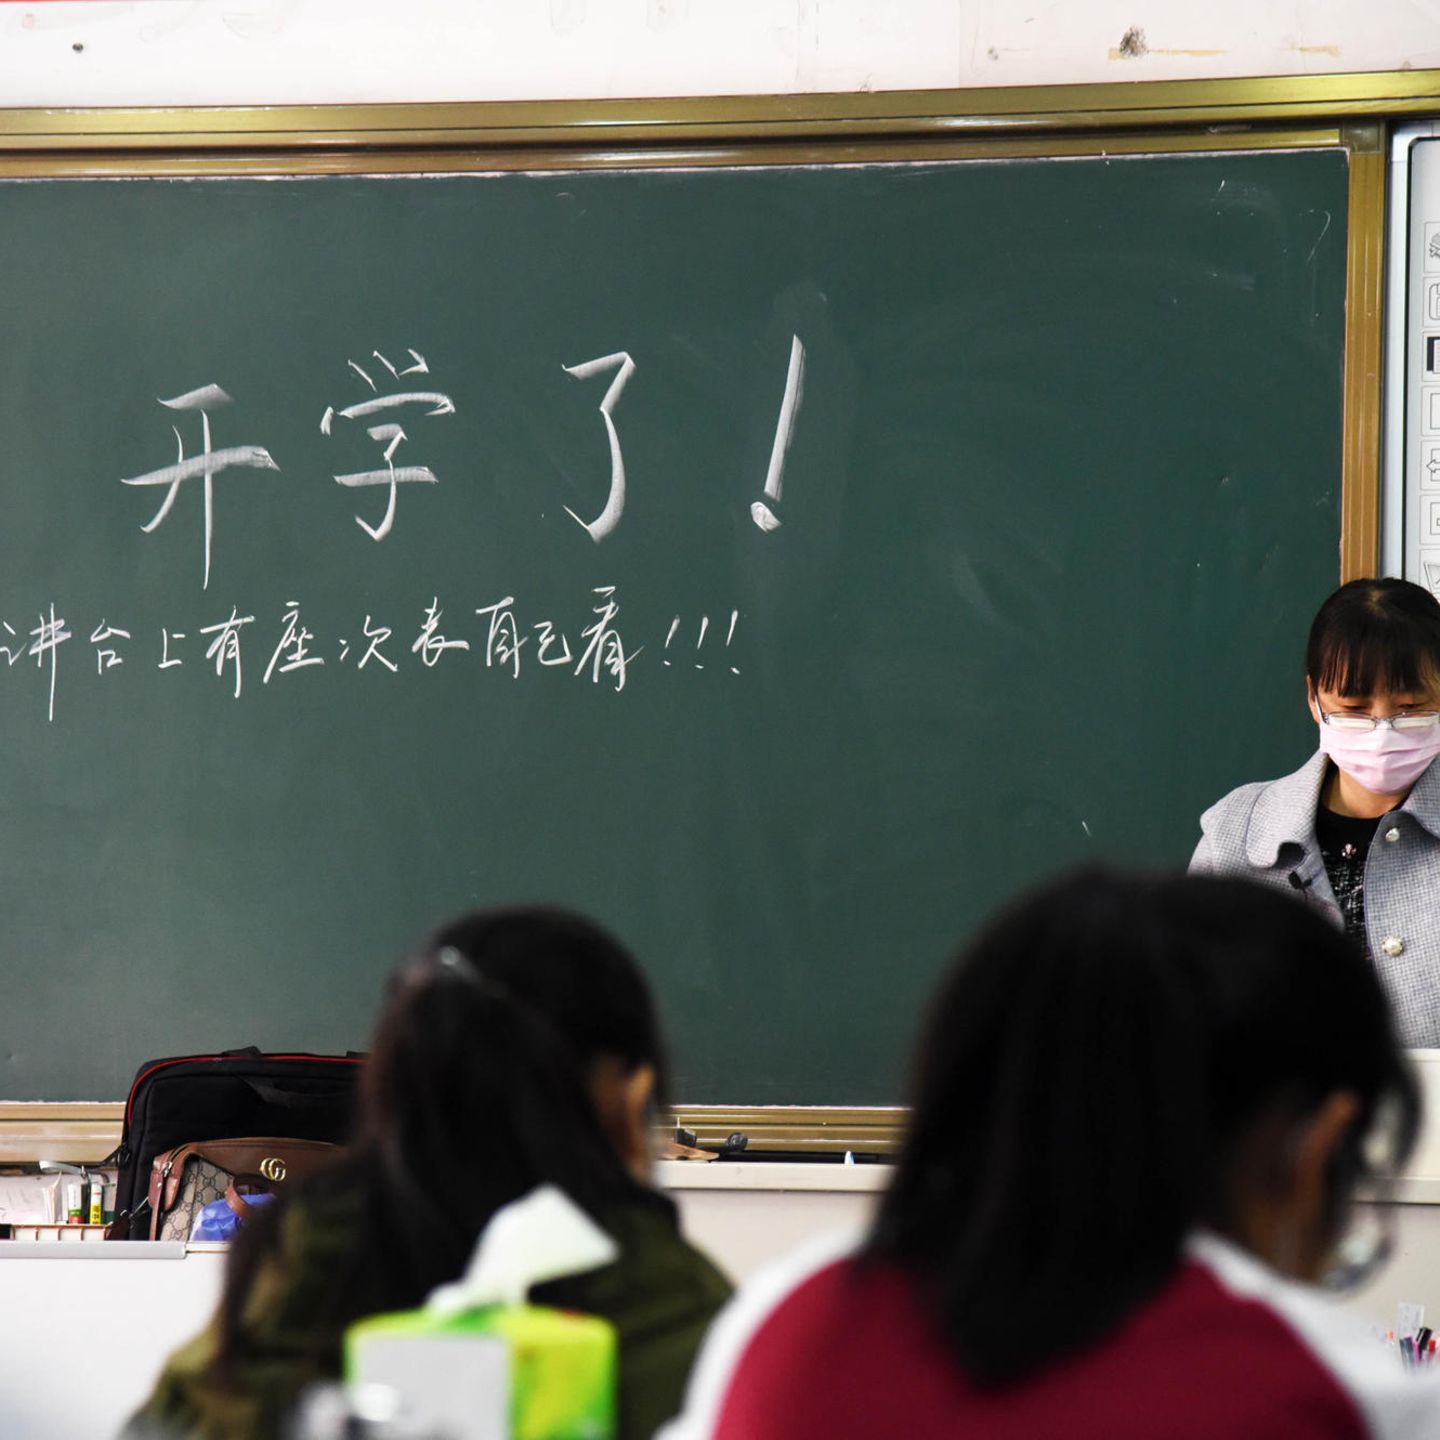 China Korperliche Und Psychische Strafmassnahmen An Schulen Verboten Stern De